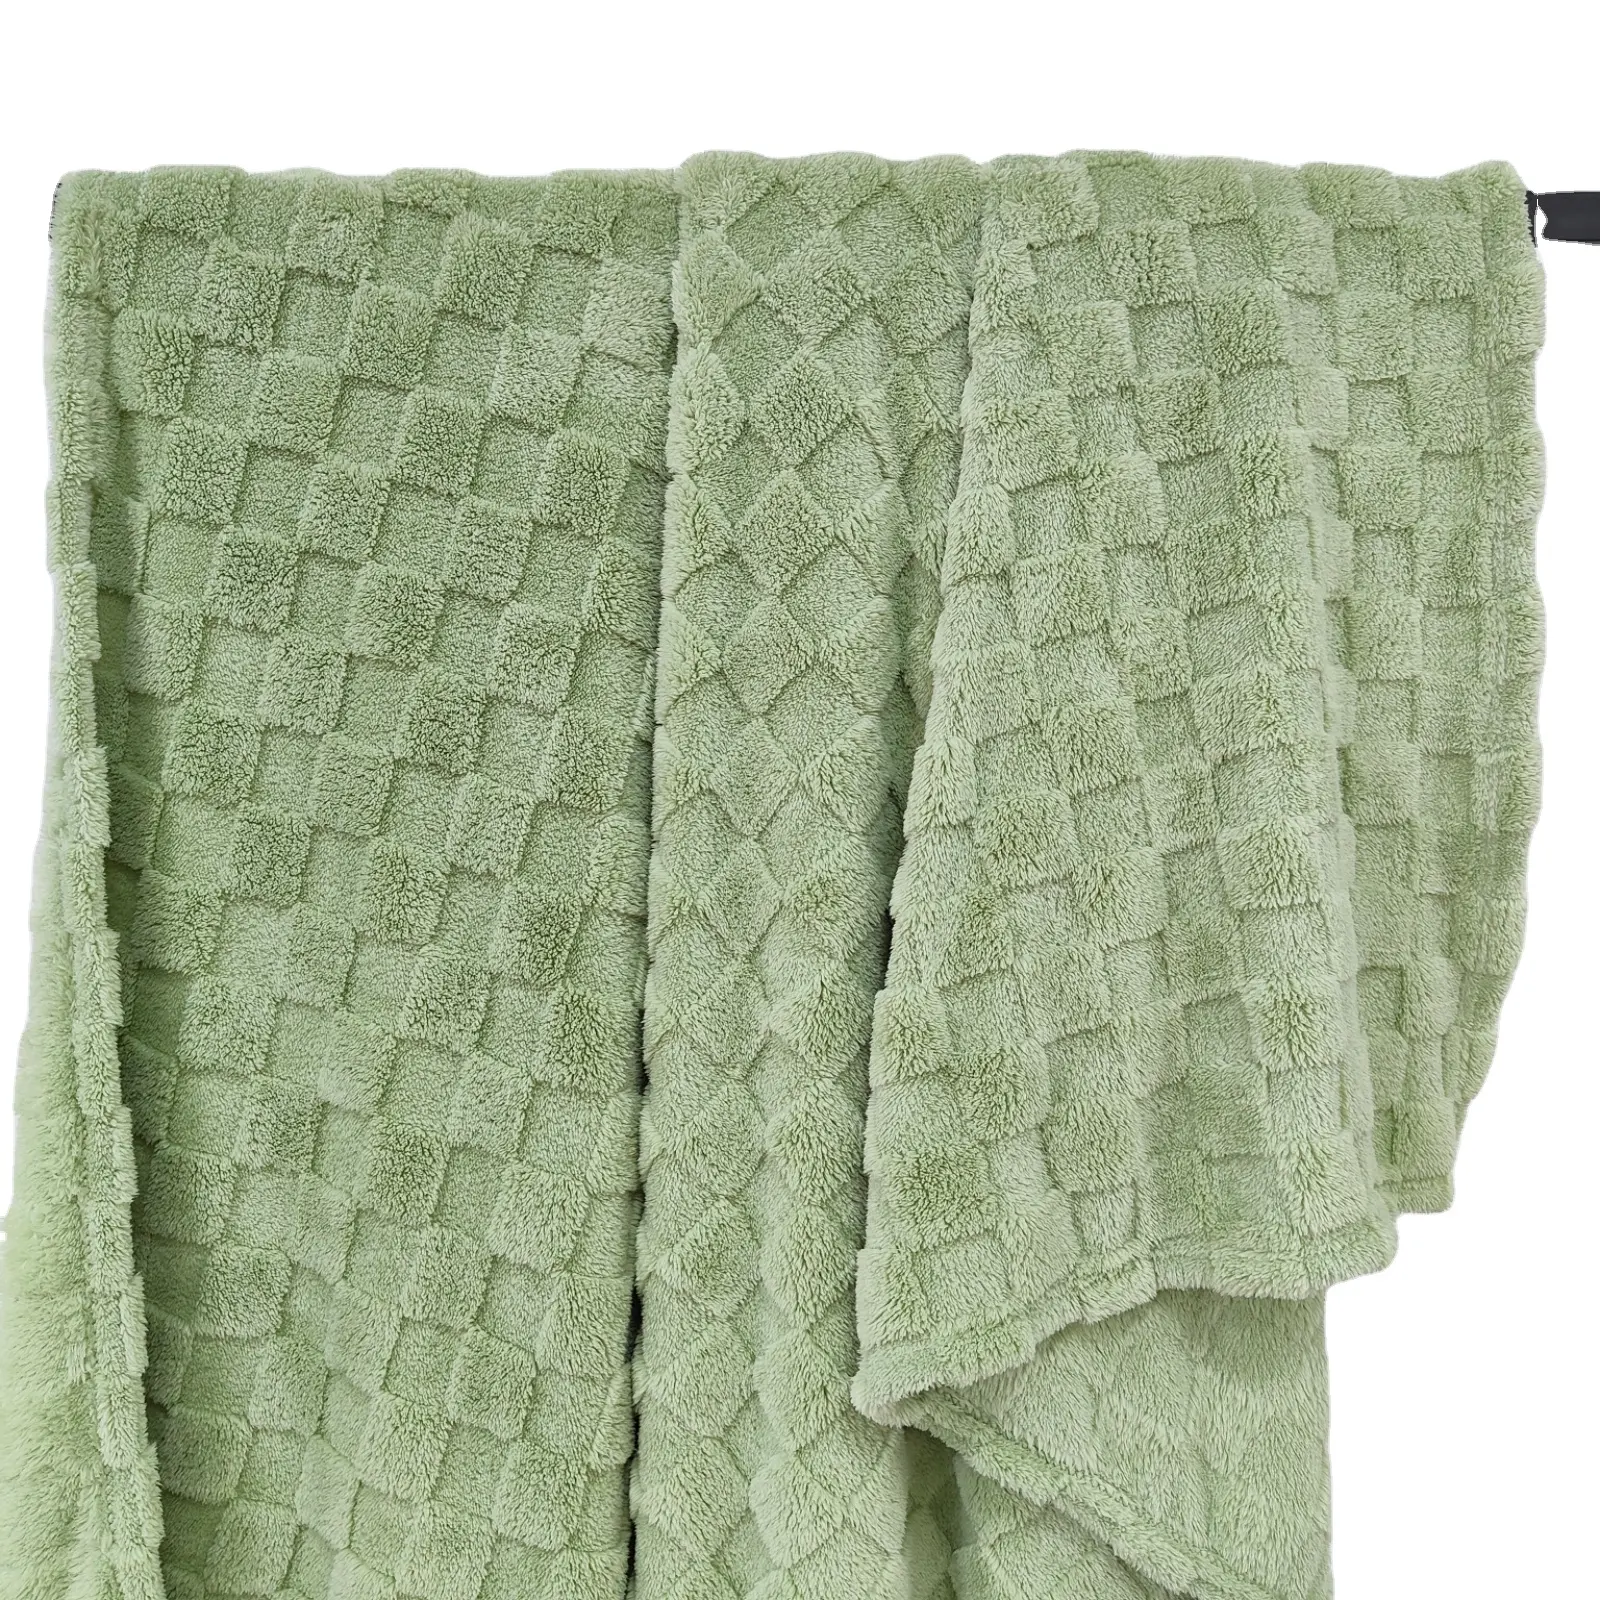 घर के लिए स्टॉक थोक तफ़ुरोंग वफ़ल बुना हुआ कंबल कोरल मखमली कंबल रजाई फलालैन झपकी सोफा कंबल